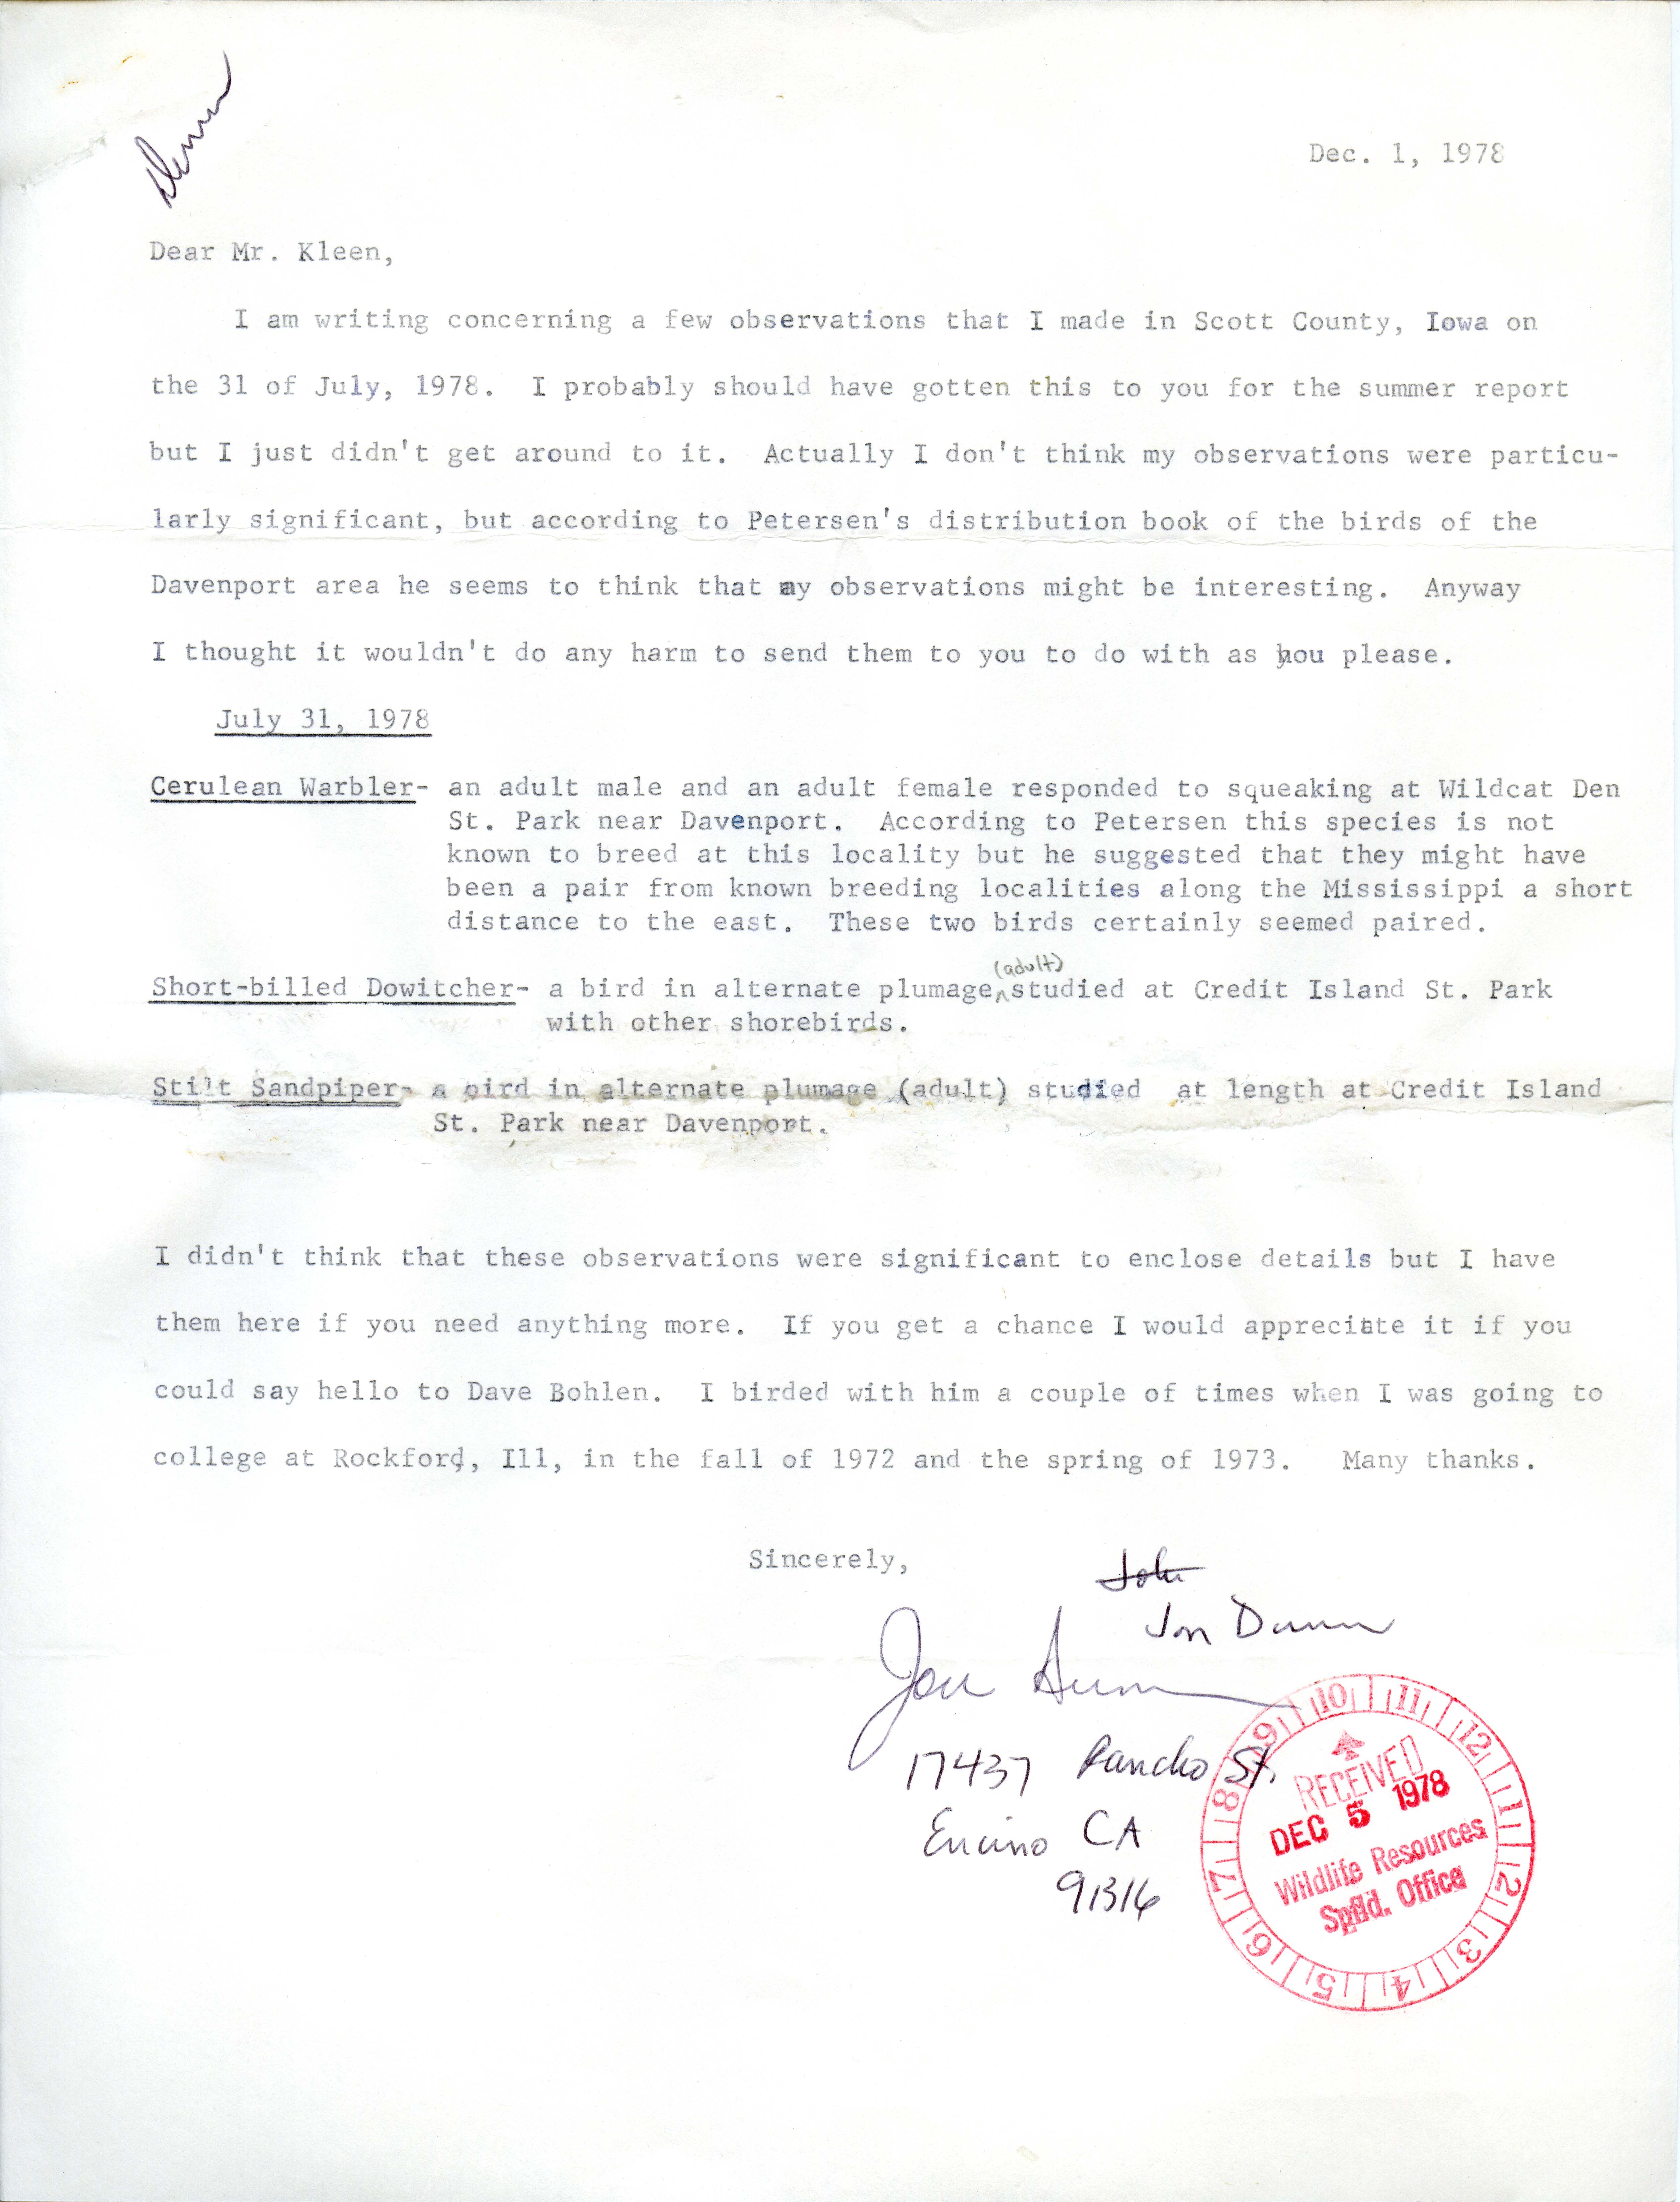 James J. Dinsmore letter to Vernon M. Kleen regarding bird sightings, December 1, 1978